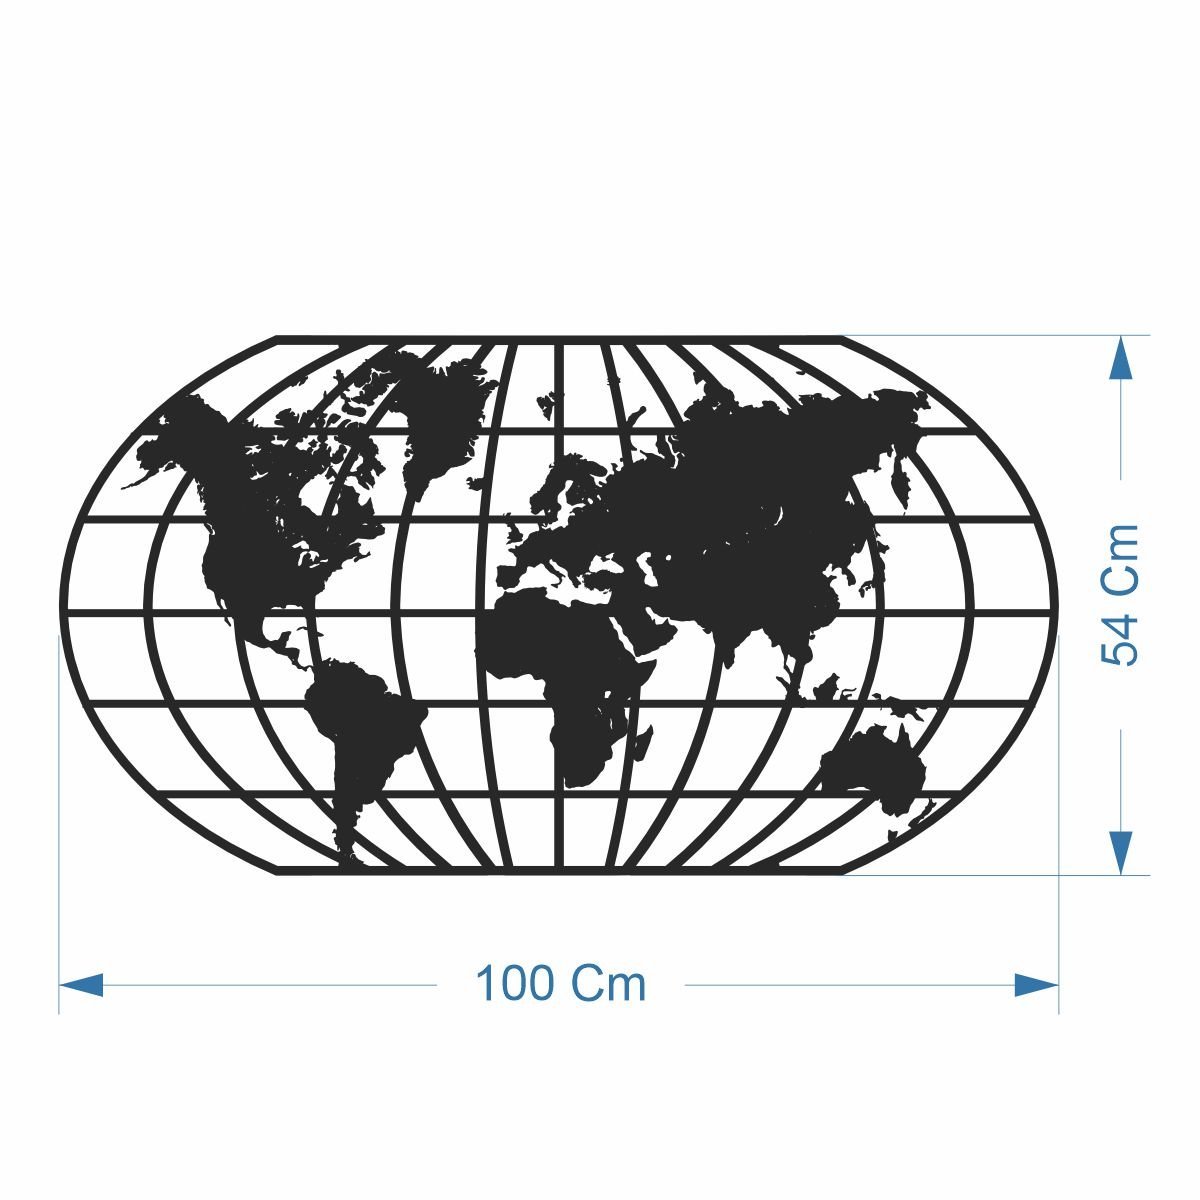 Quadro Decoração Vazado Mapa Mundi World Uno Preto 100x54 Cm - 3